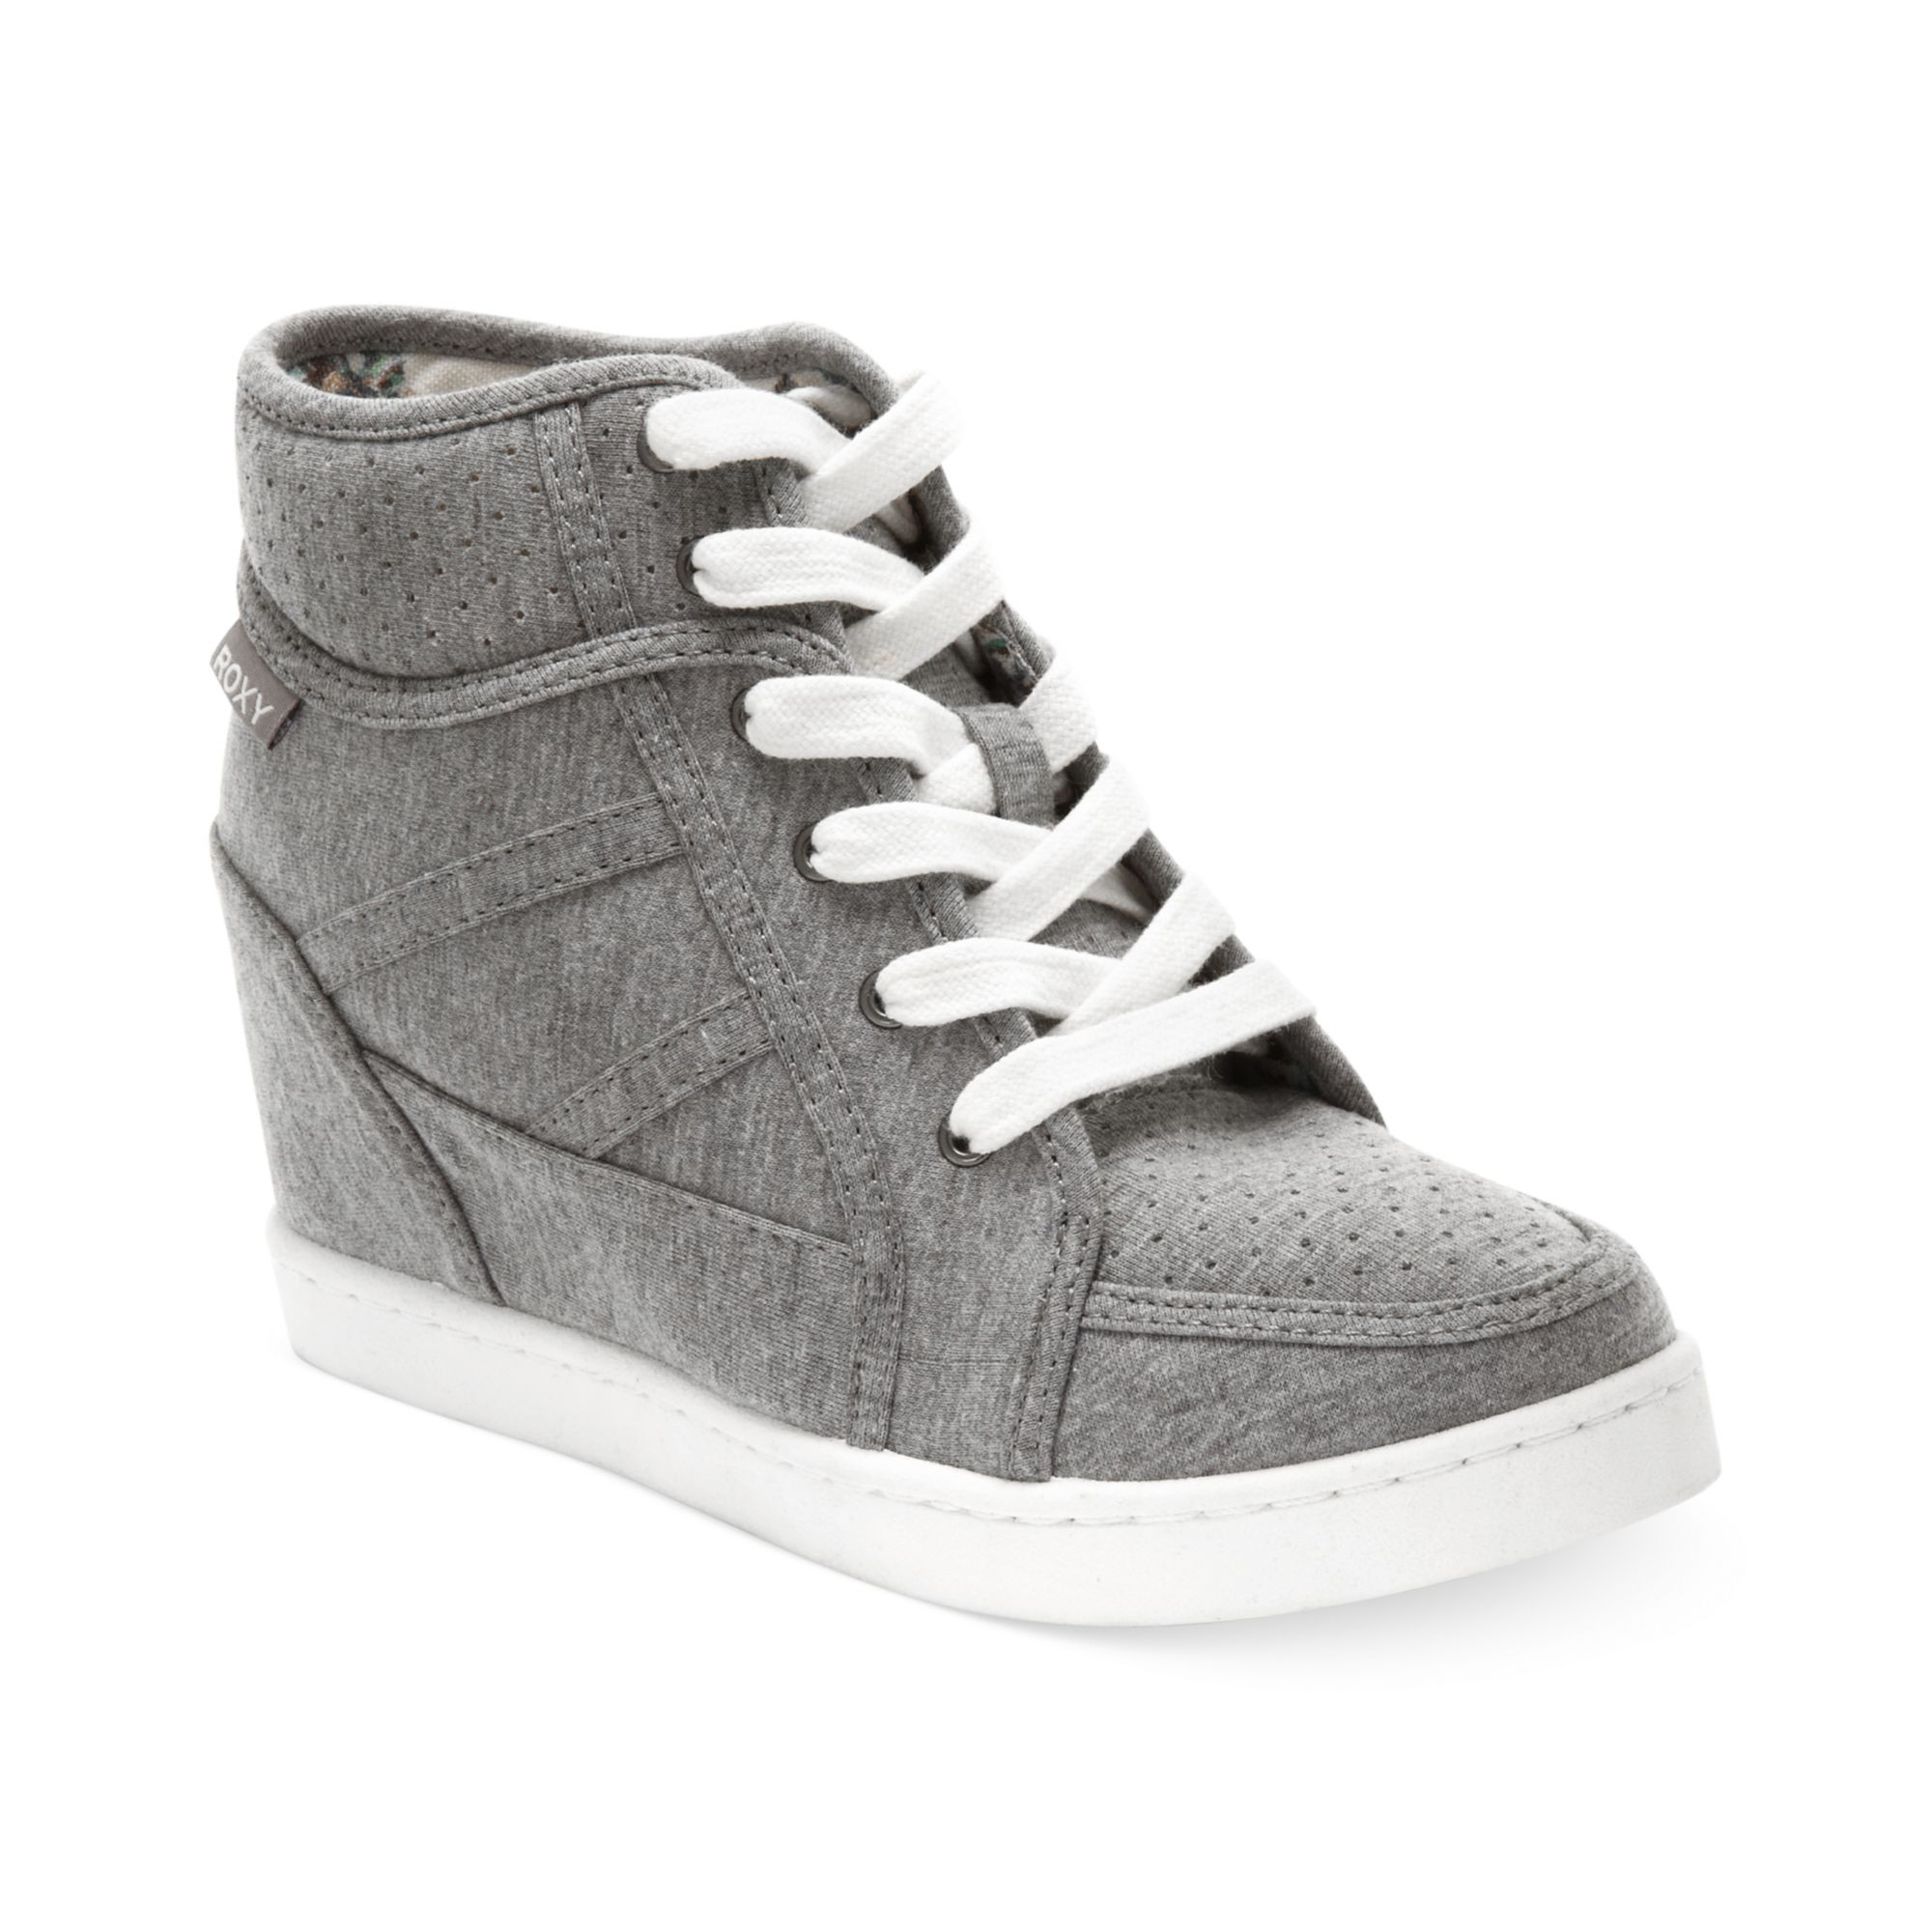 wedge sneakers gray